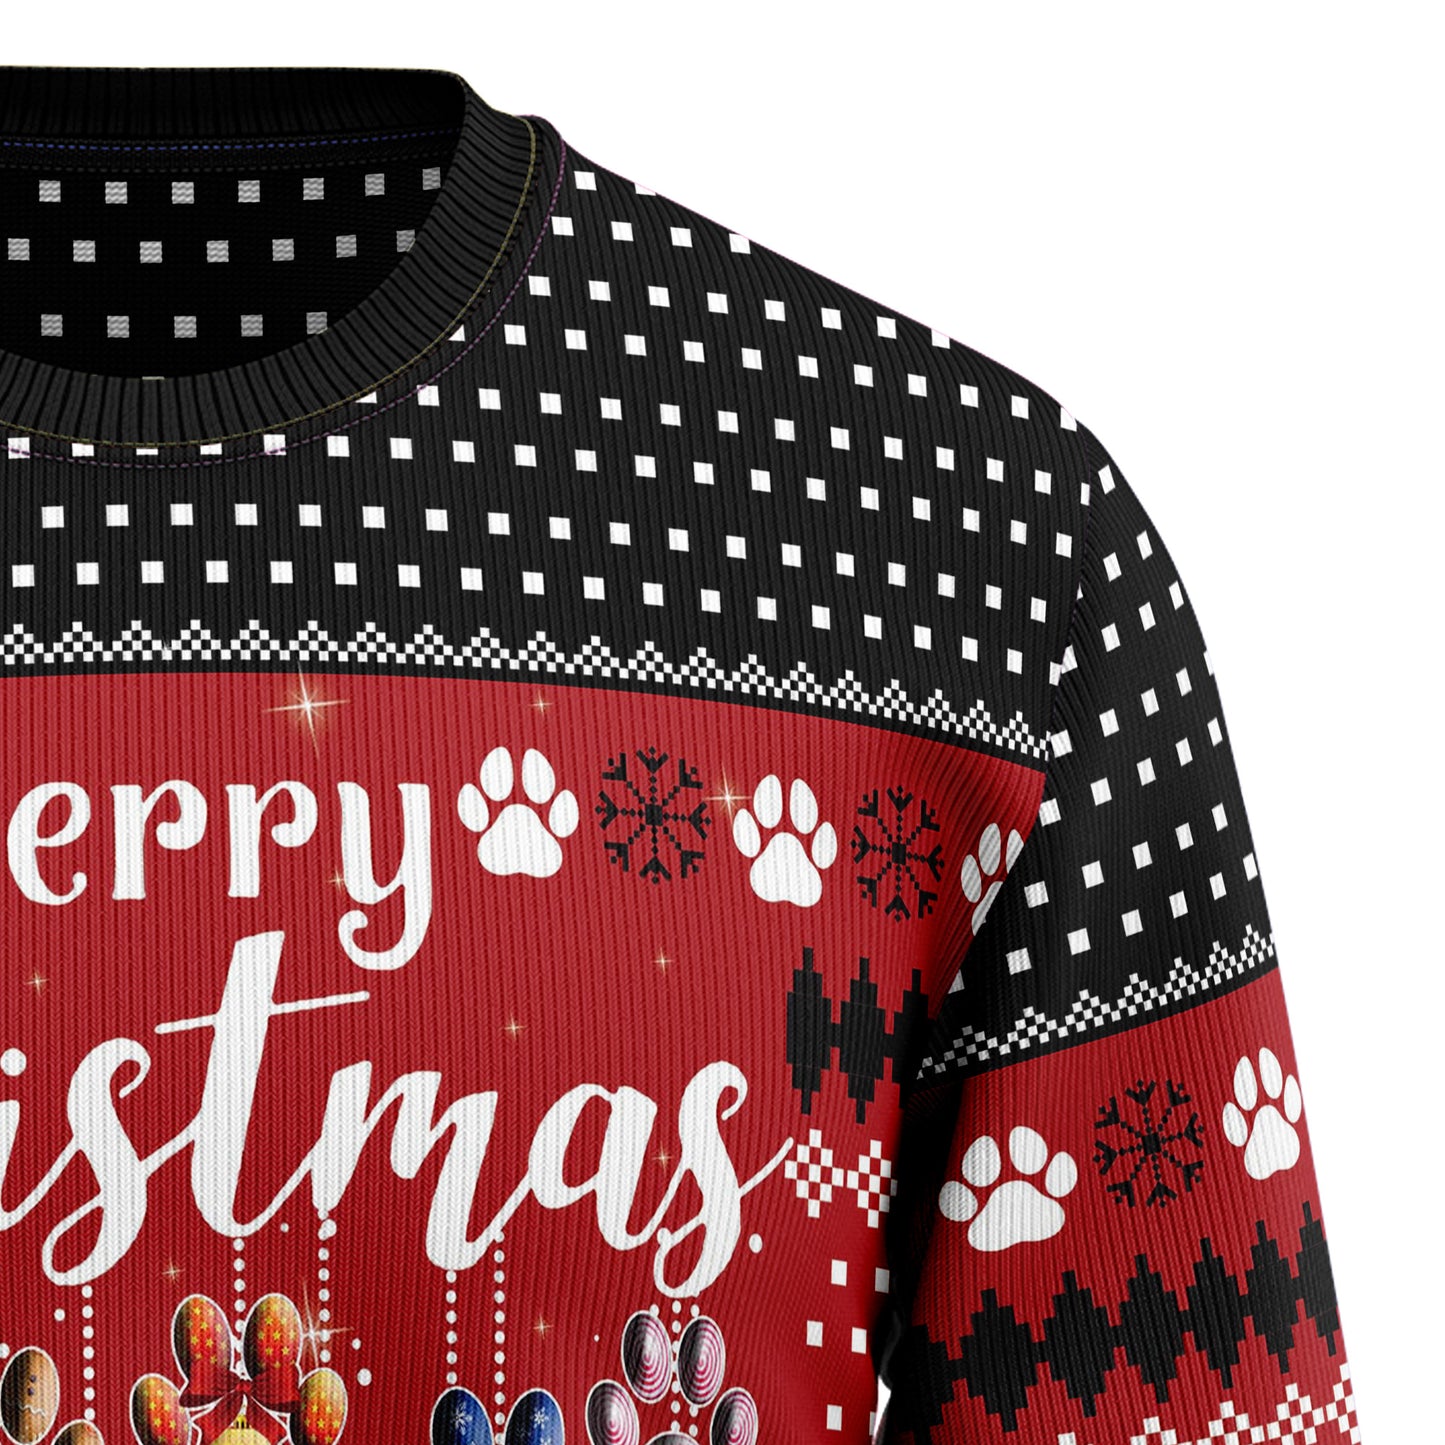 Dog Merry Christmas T0911 Ugly Christmas Sweater